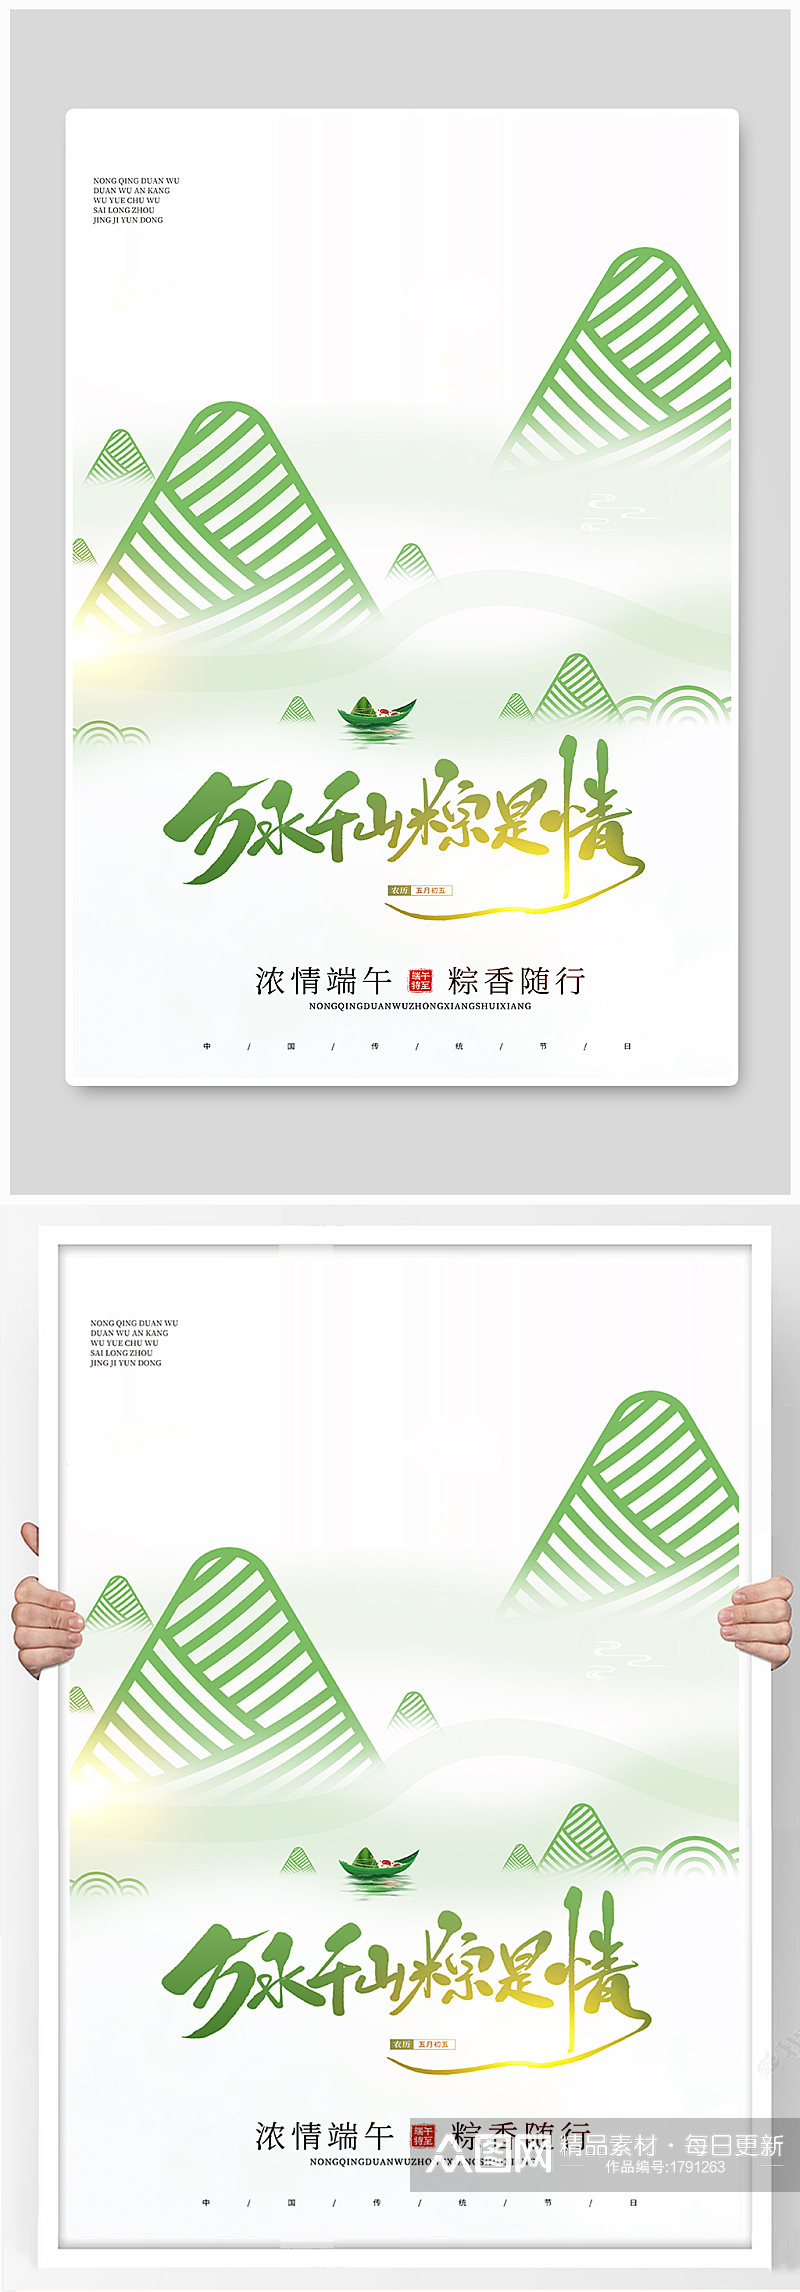 端午节万水千山粽是情意境创意宣传海报素材